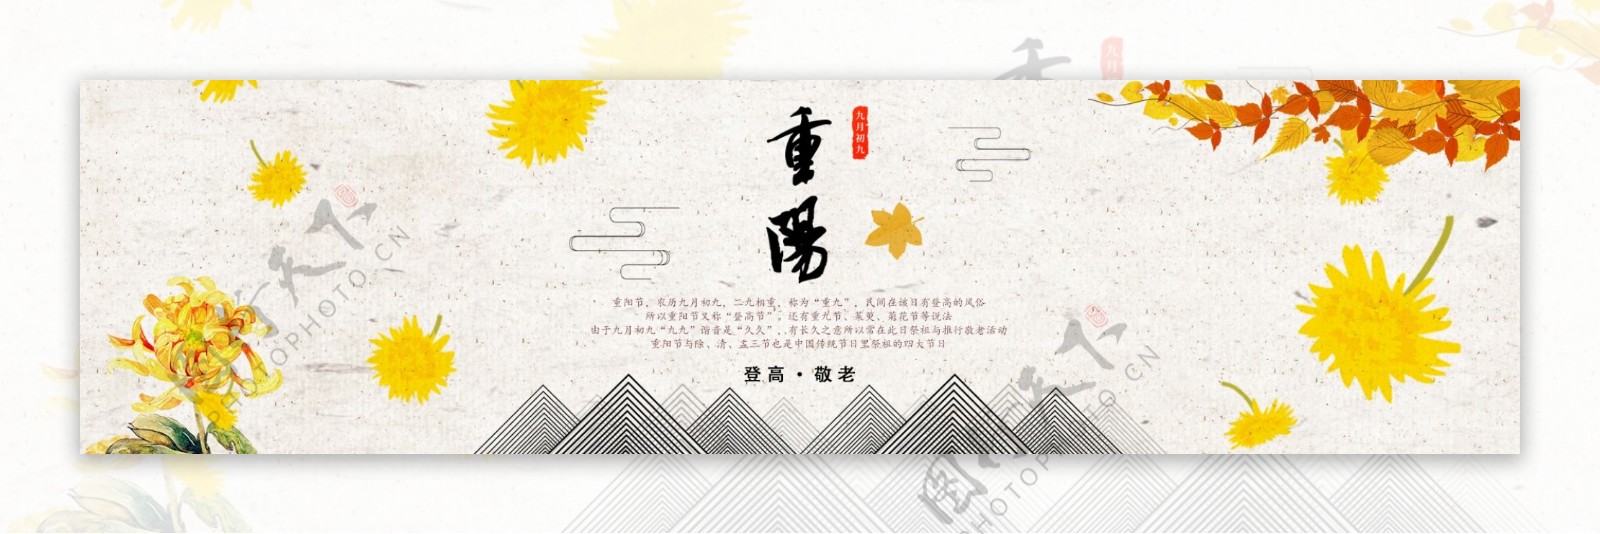 中国传统节日重阳banner